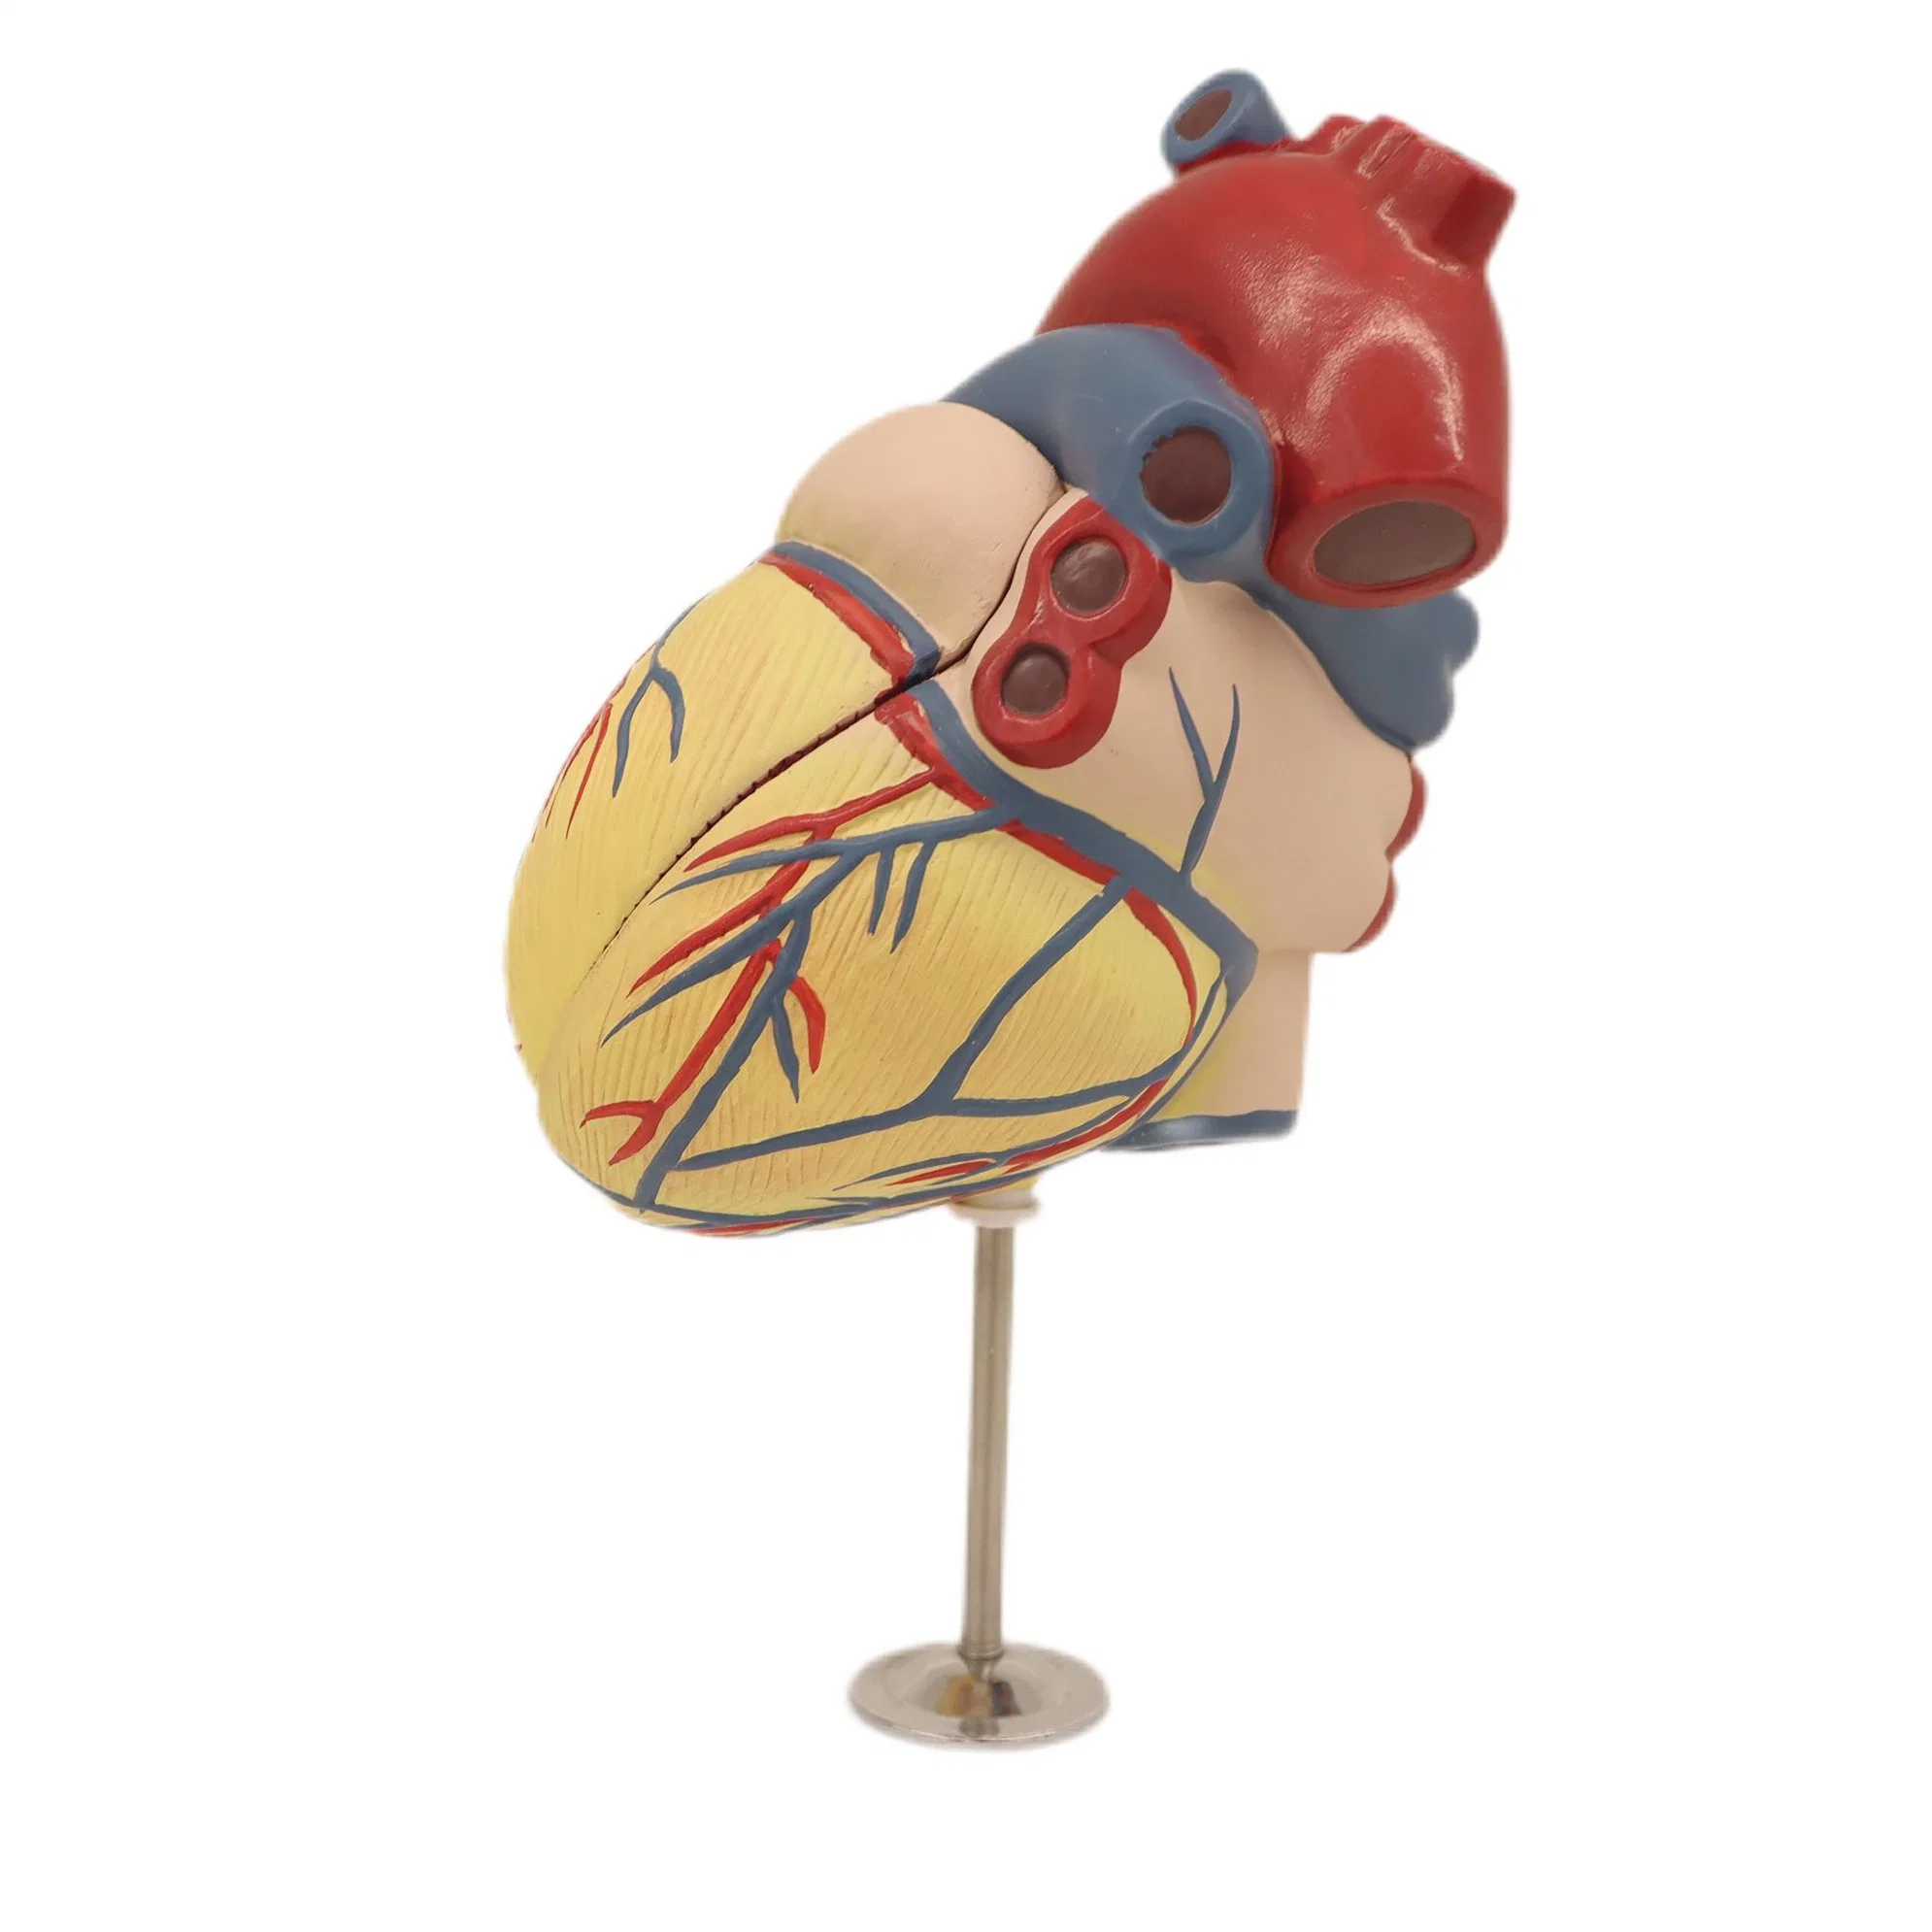 Modelos de Enseñanza médica Color óseo Modelo de disección de corazón de esqueleto humano